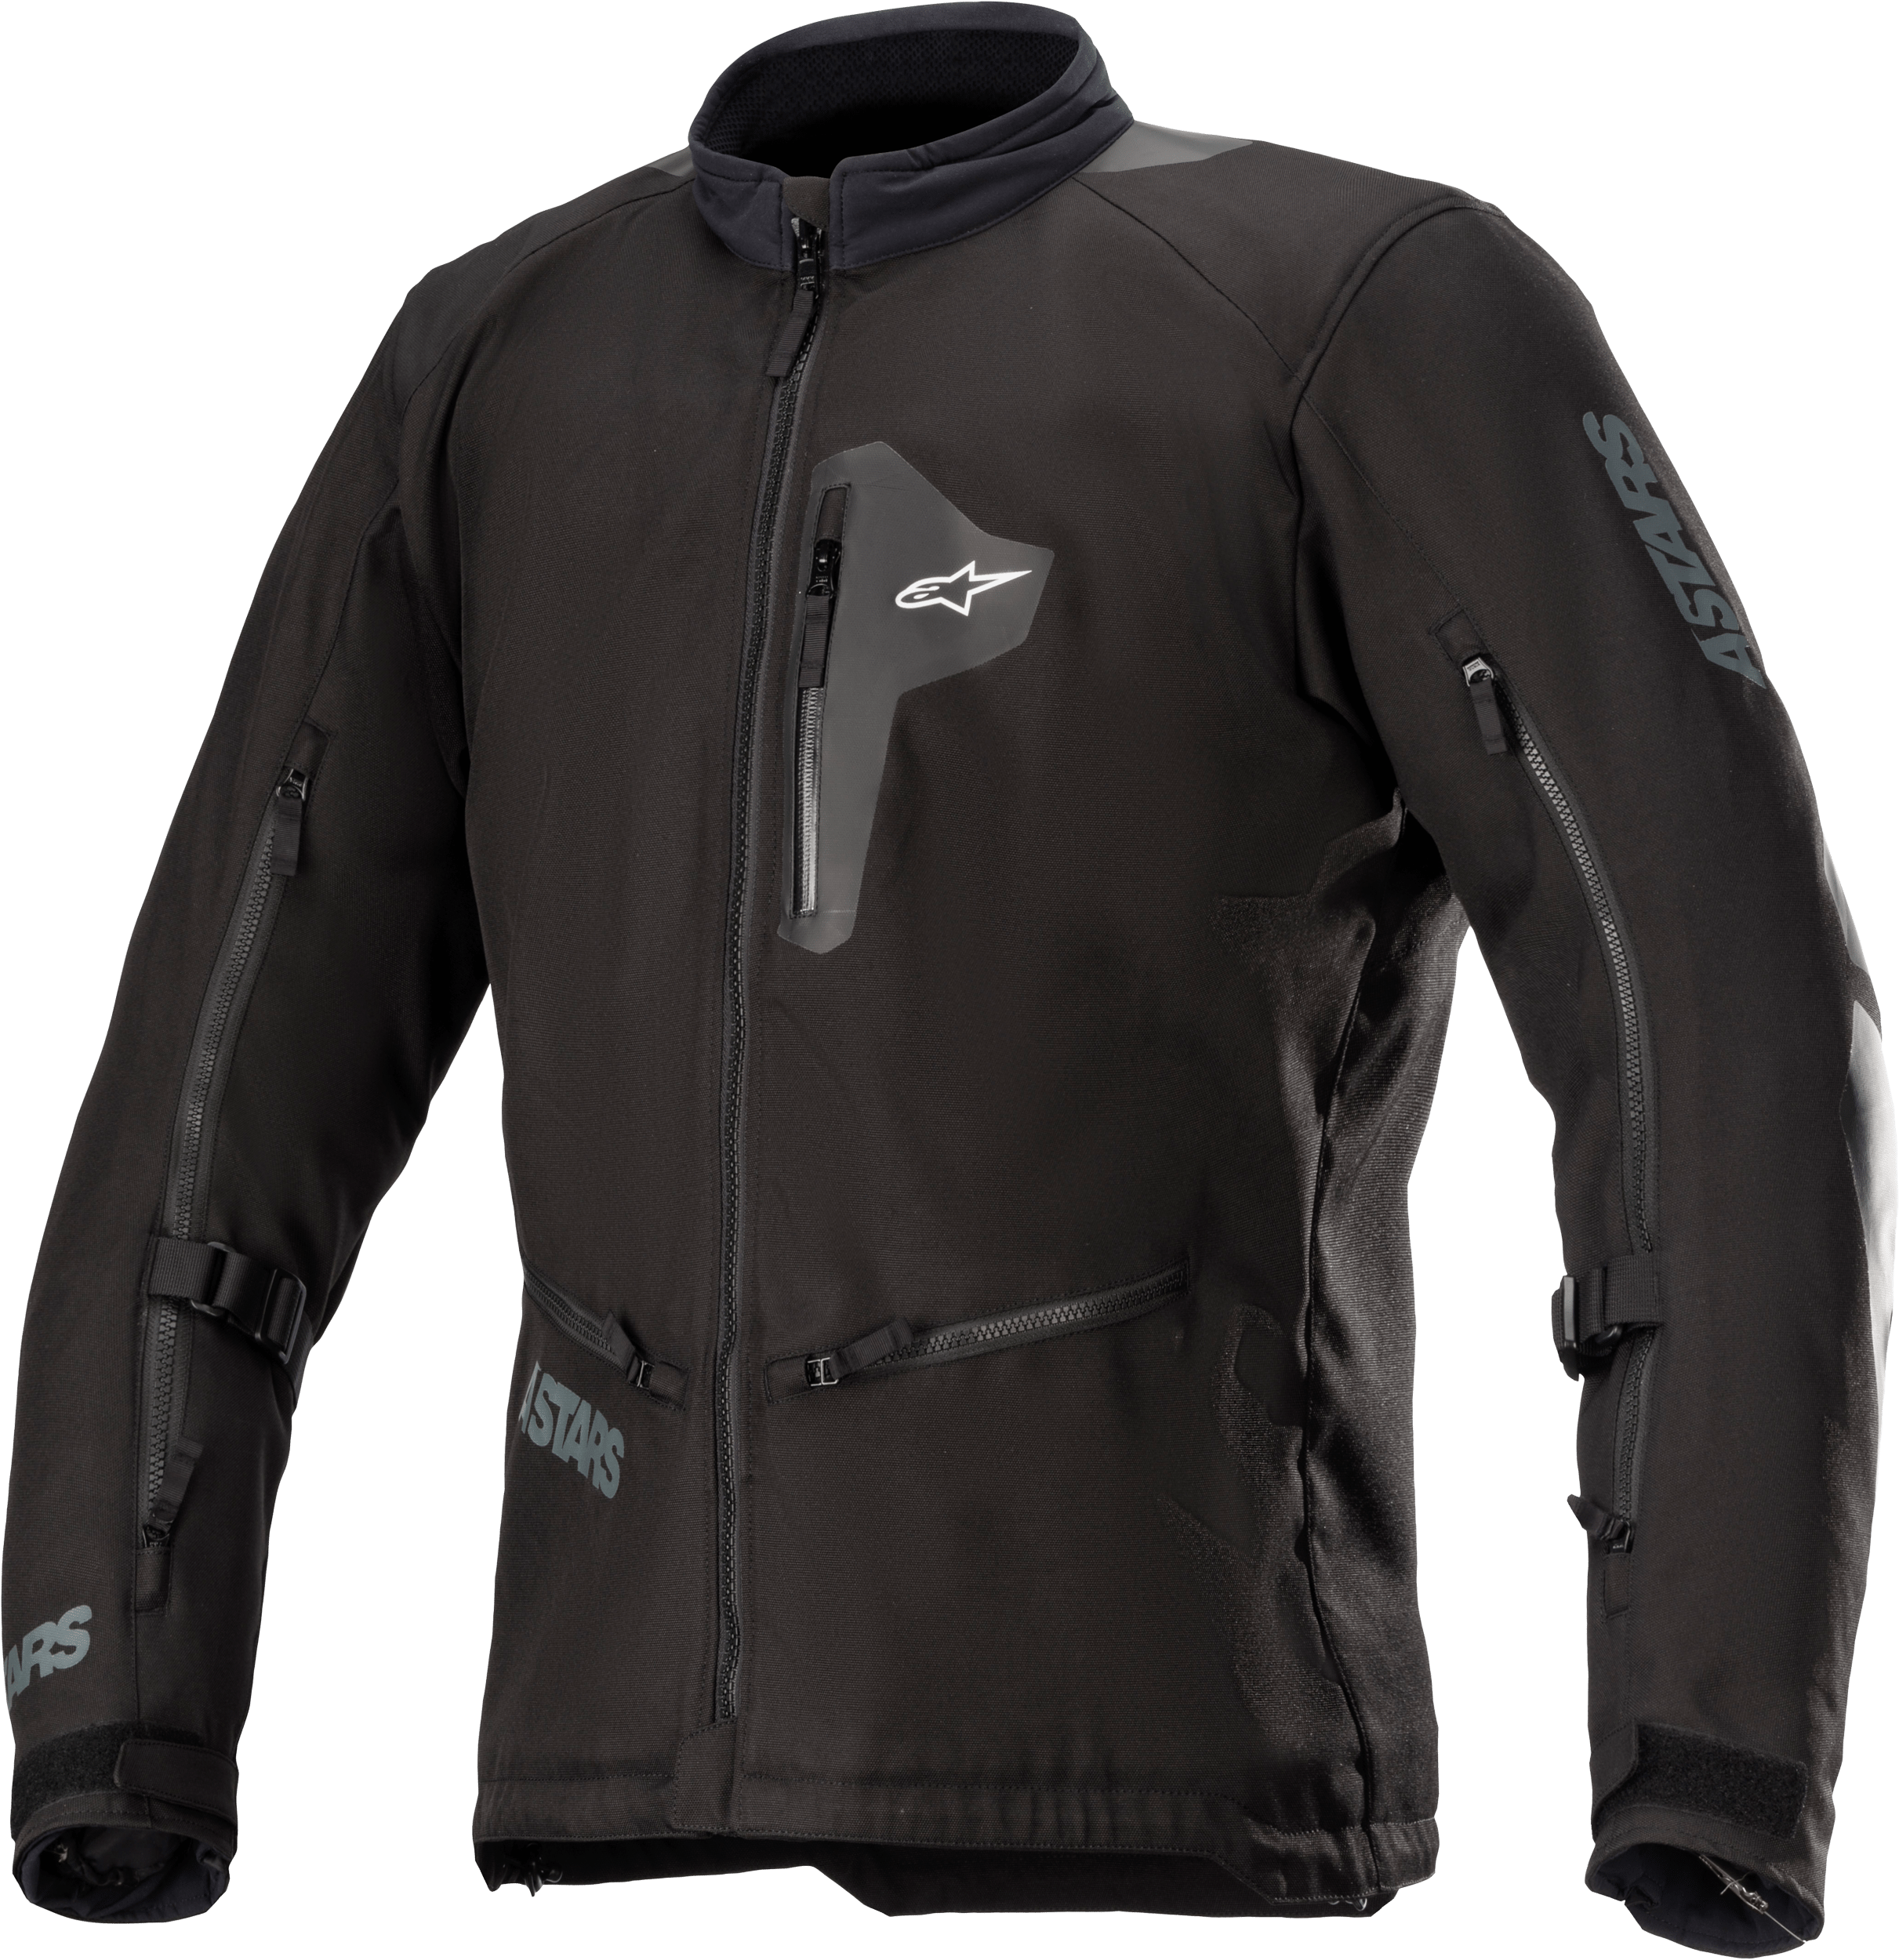 Western Powersports Jacket Black/Black / 2X Venture Xt Jacket By Alpinestars 3303022-1100-2XL